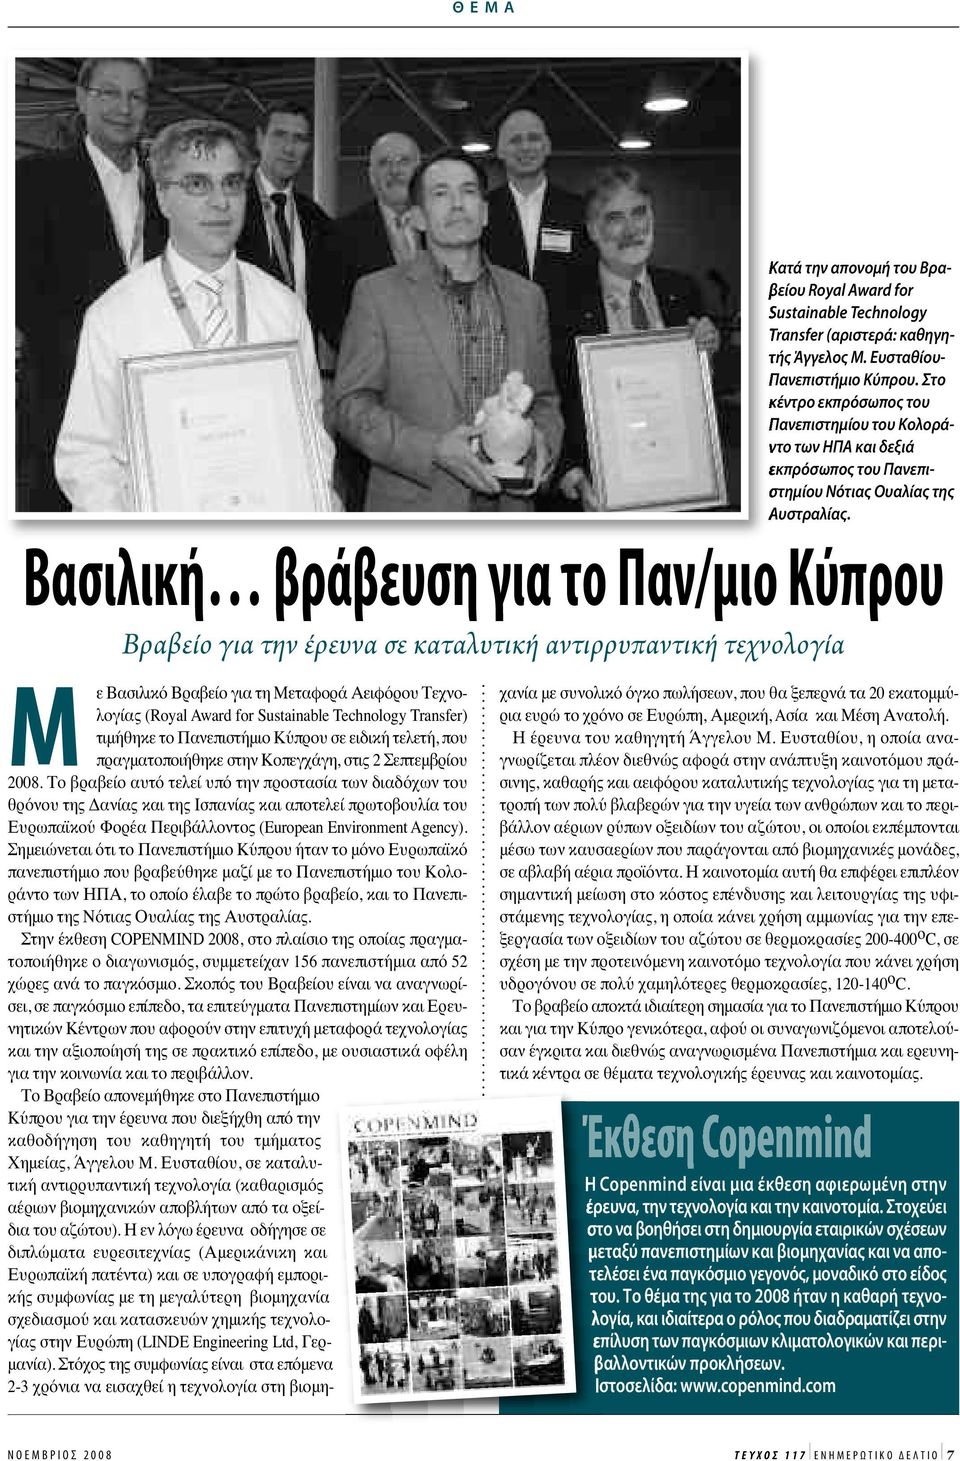 Βασιλική βράβευση για το Παν/μιο Κύπρου Βραβείο για την έρευνα σε καταλυτική αντιρρυπαντική τεχνολογία Μ ε Βασιλικό Βραβείο για τη Μεταφορά Αειφόρου Τεχνολογίας (Royal Award for Sustainable